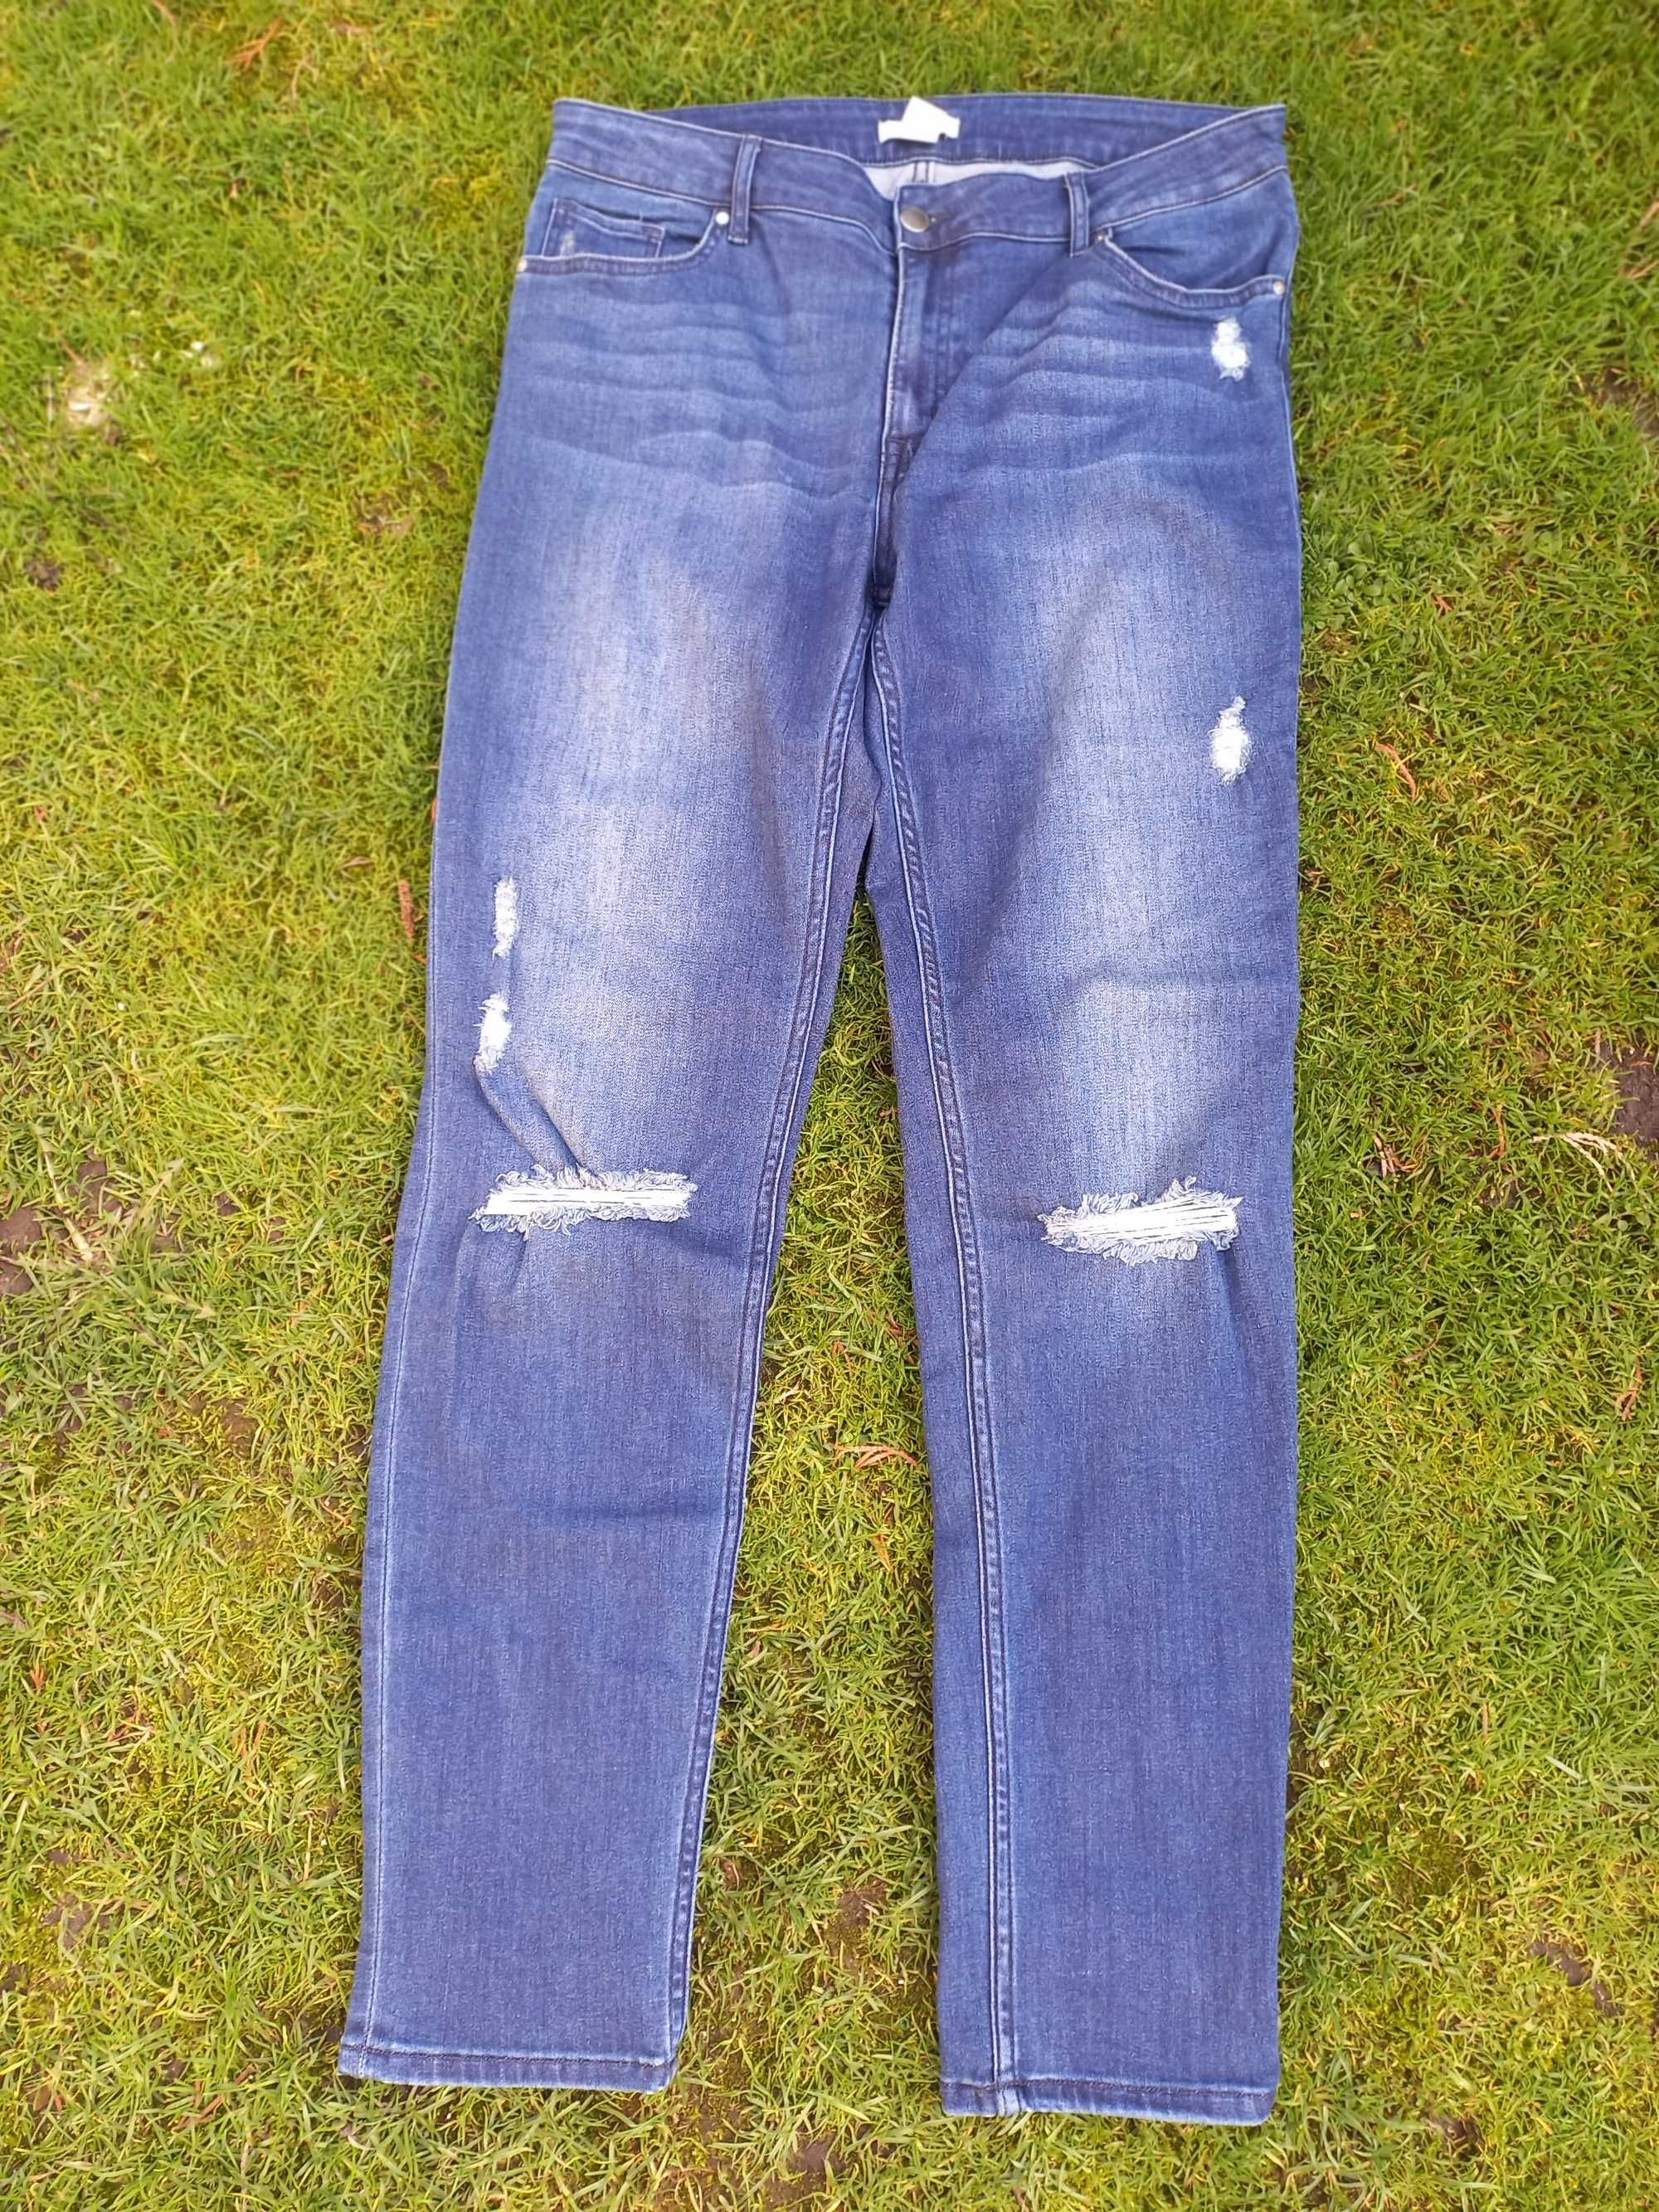 H&M. Dopasowane jeansy. Roz 44